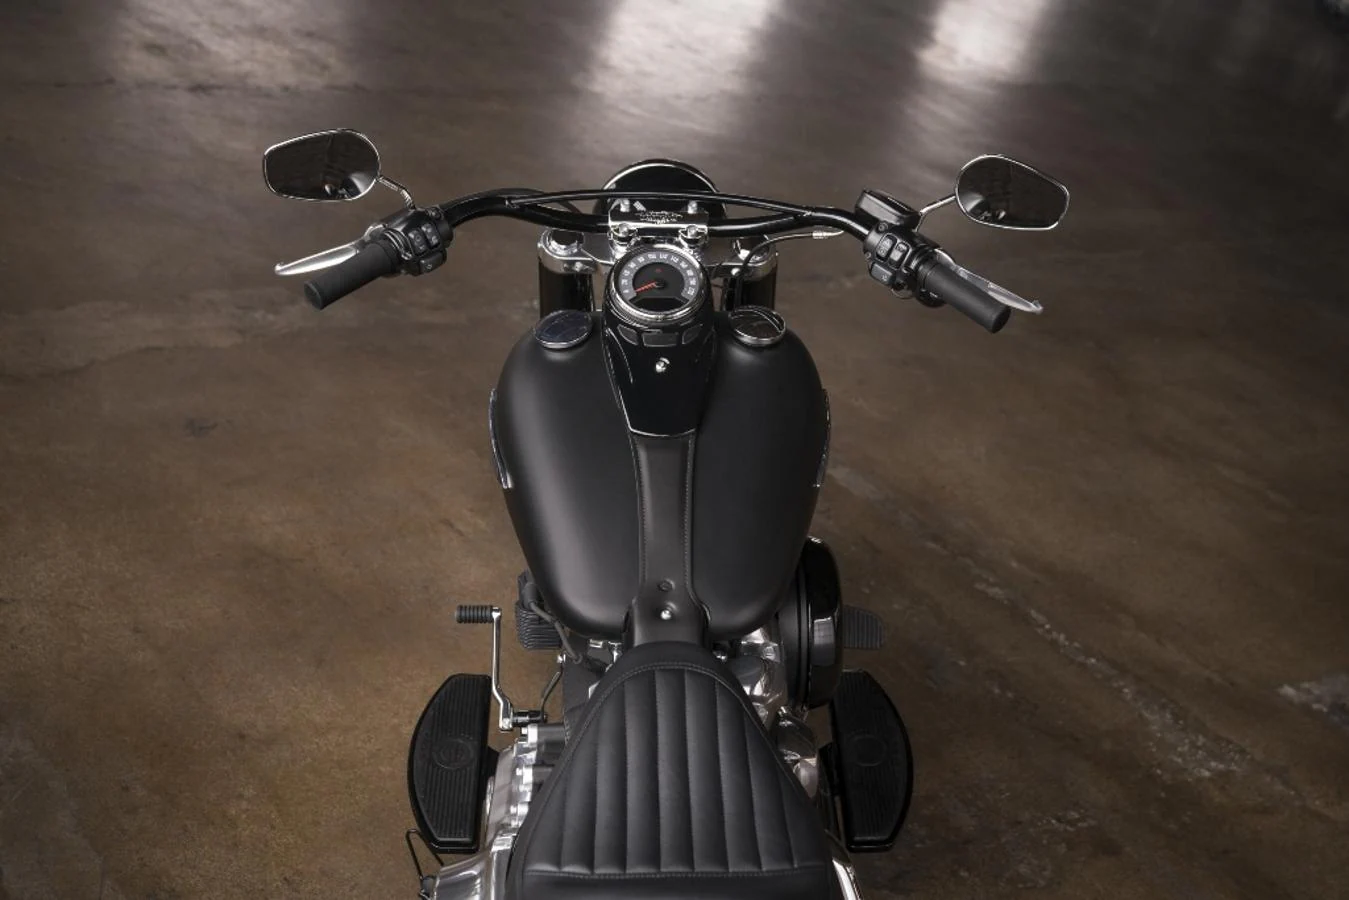 Harley-Davidson Softail Slim 2018. Una de las marcas más míticas y legendarias nos ha presentado una nueva variante de sus famosas Softail, en esta ocasión una versión Slim con detalles retro y lo mejor de estas conocidas motocicletas.